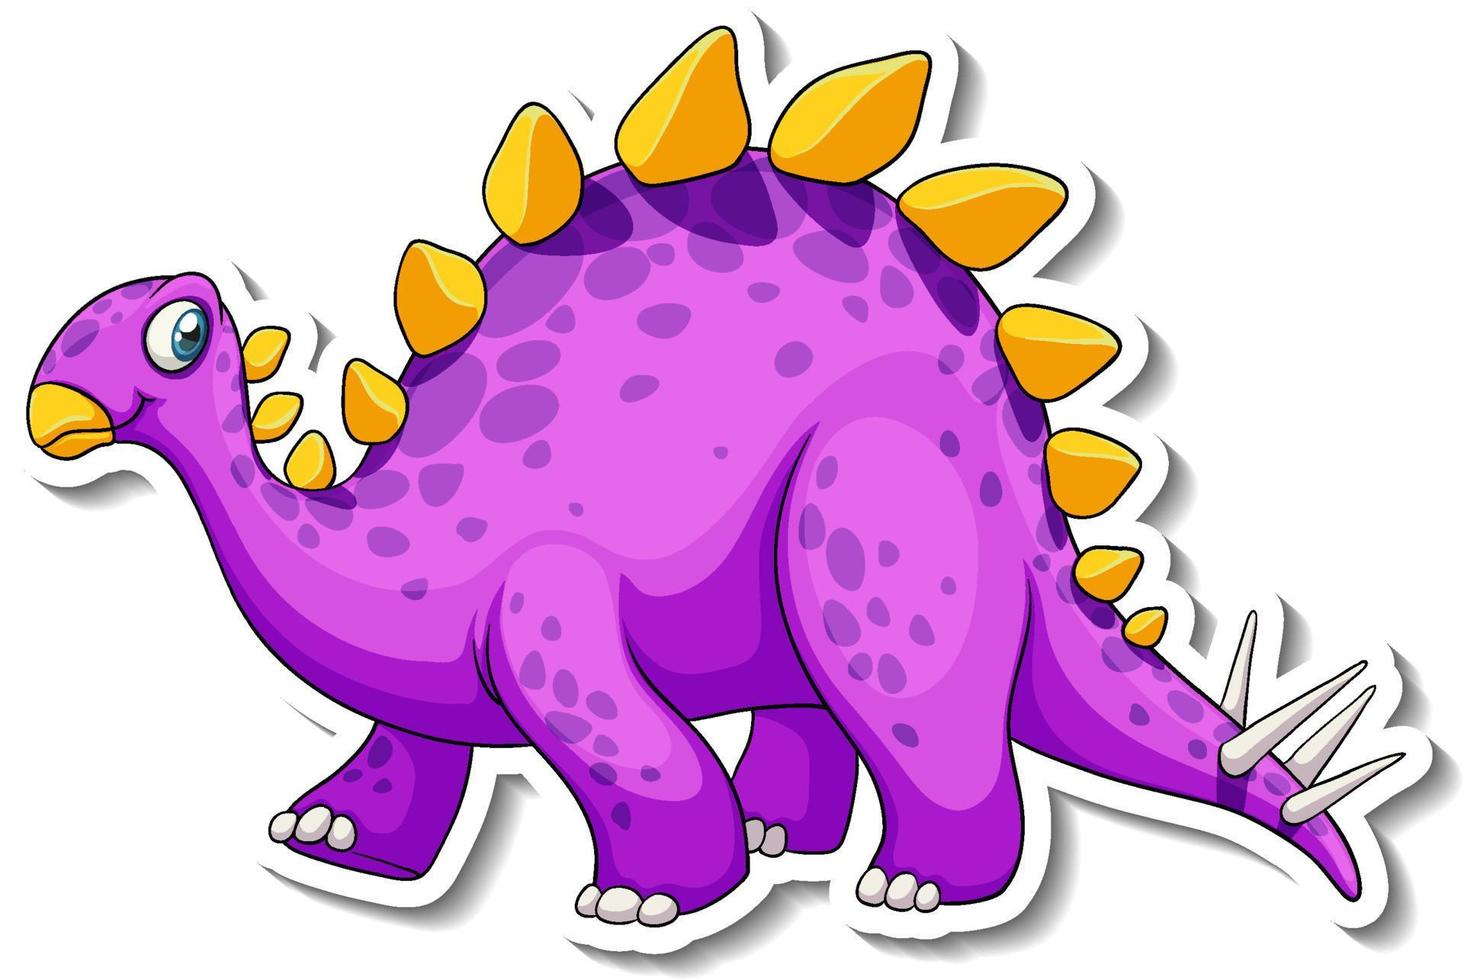 Stegosaurus dinosaur cartoon character sticker vector